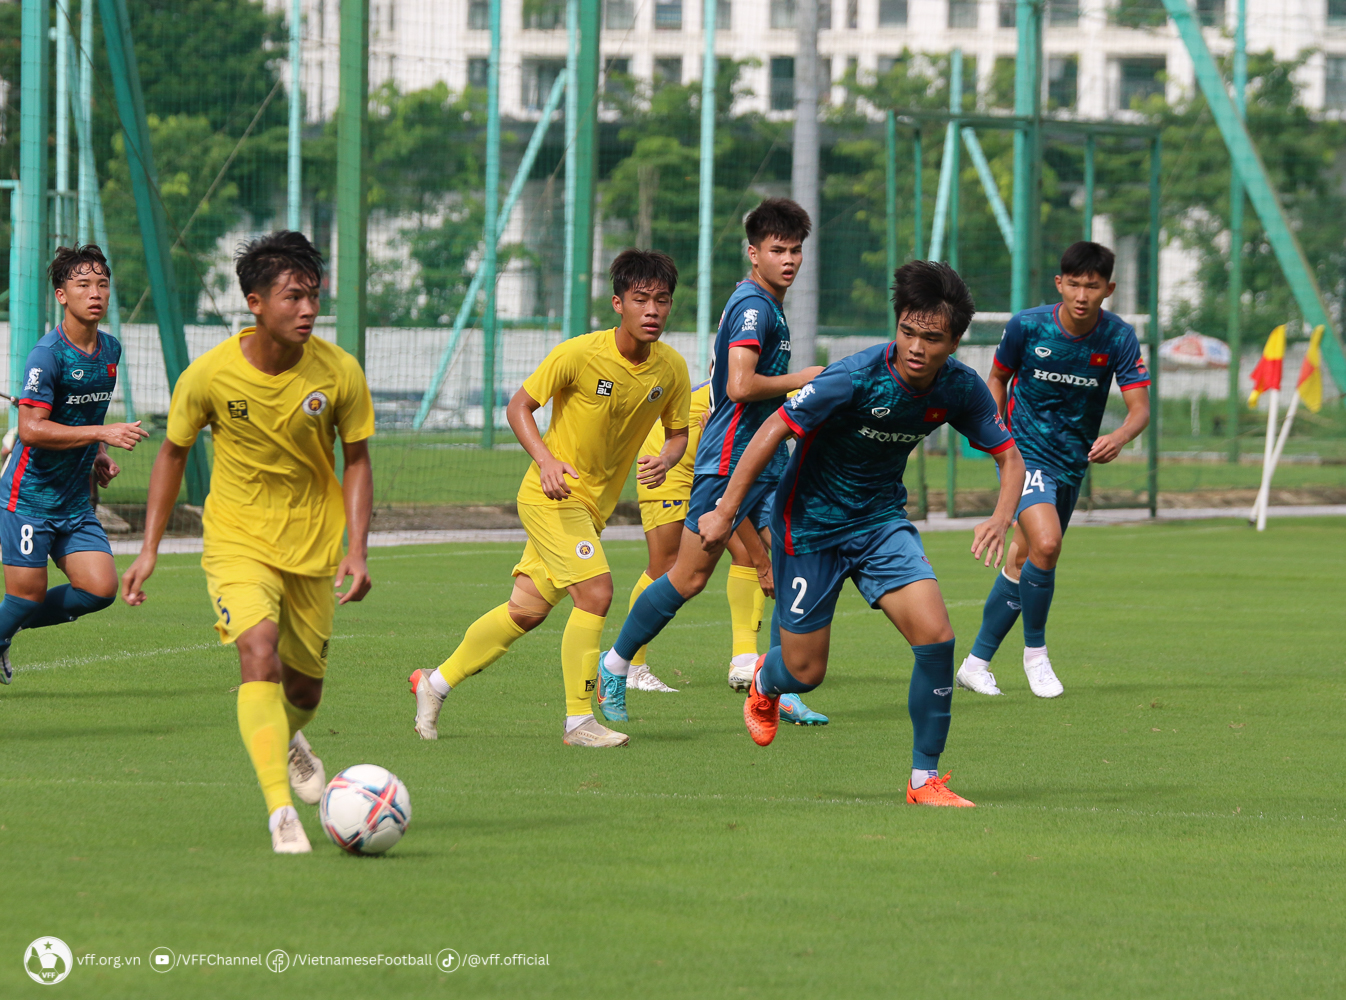 Nguyễn Công Phương (số 2) trong buổi đấu tập với U21 Hà Nội. Ảnh: VFF